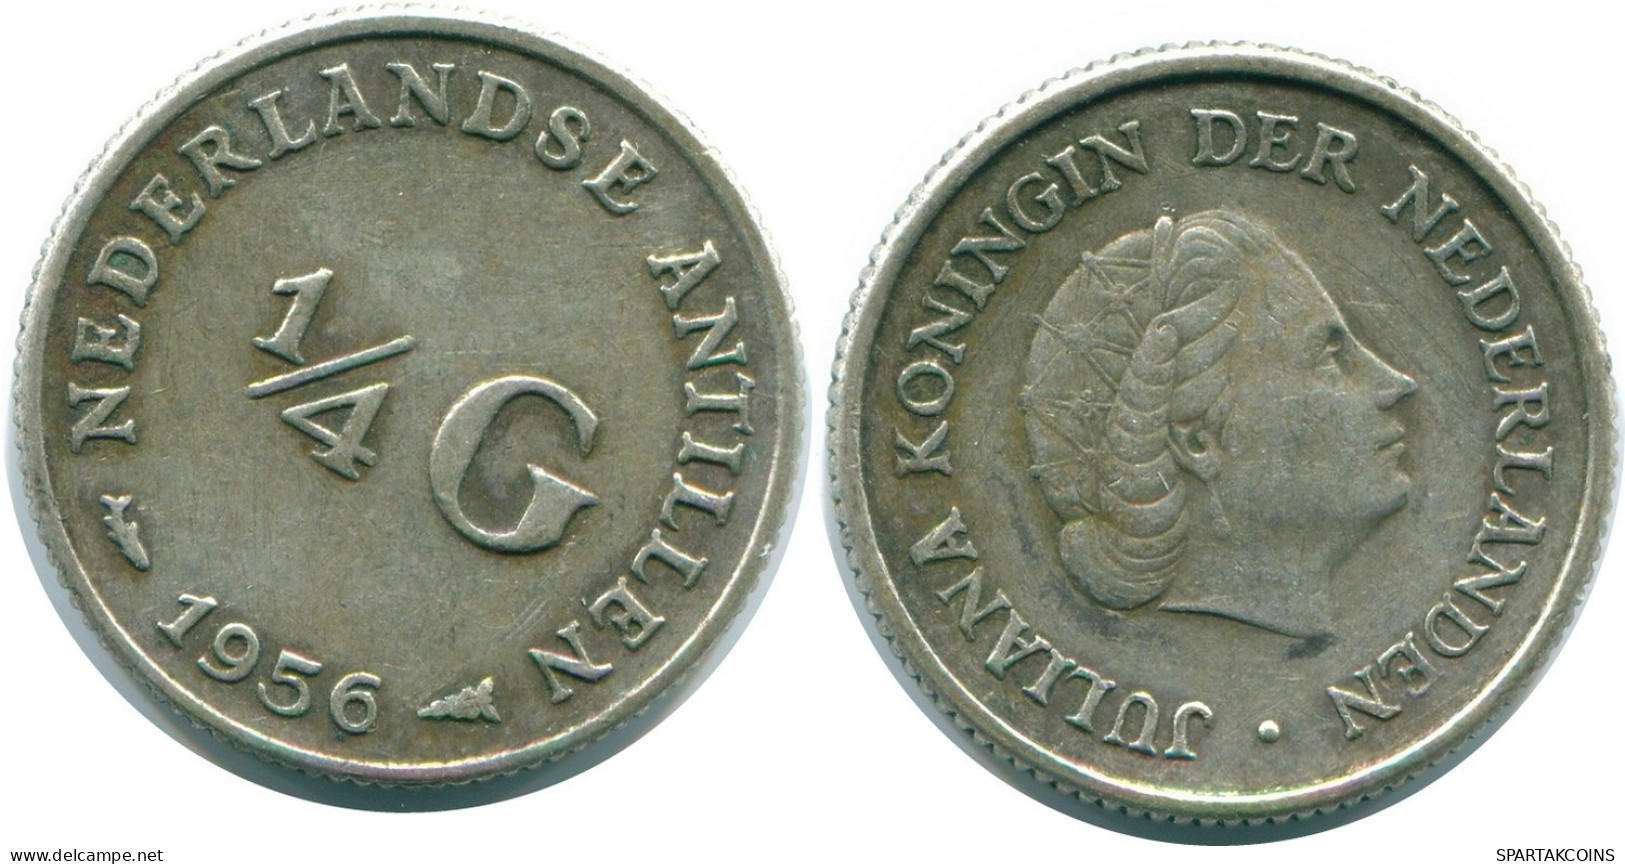 1/4 GULDEN 1956 NIEDERLÄNDISCHE ANTILLEN SILBER Koloniale Münze #NL10952.4.D.A - Nederlandse Antillen